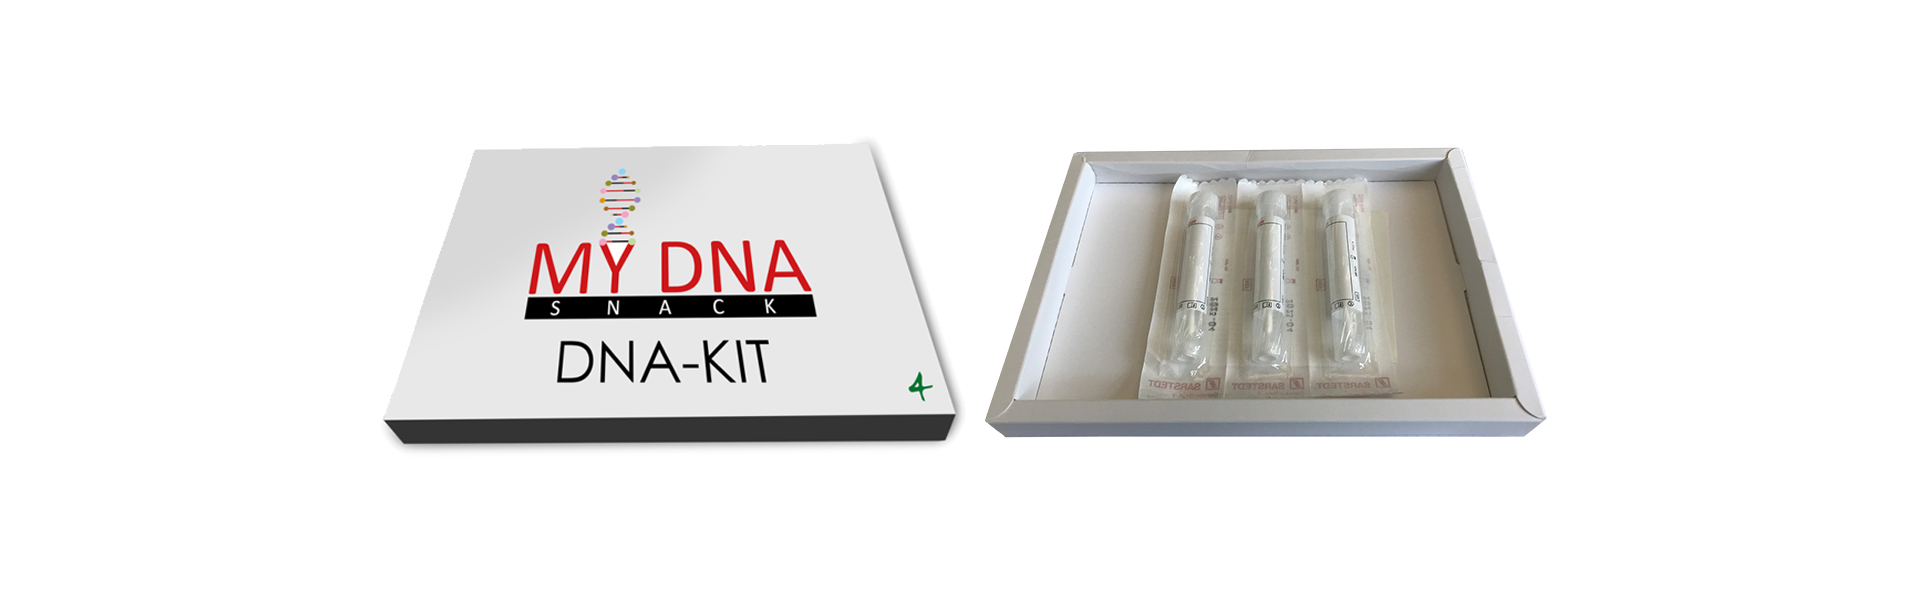 My DNA Snack DNA-Kit